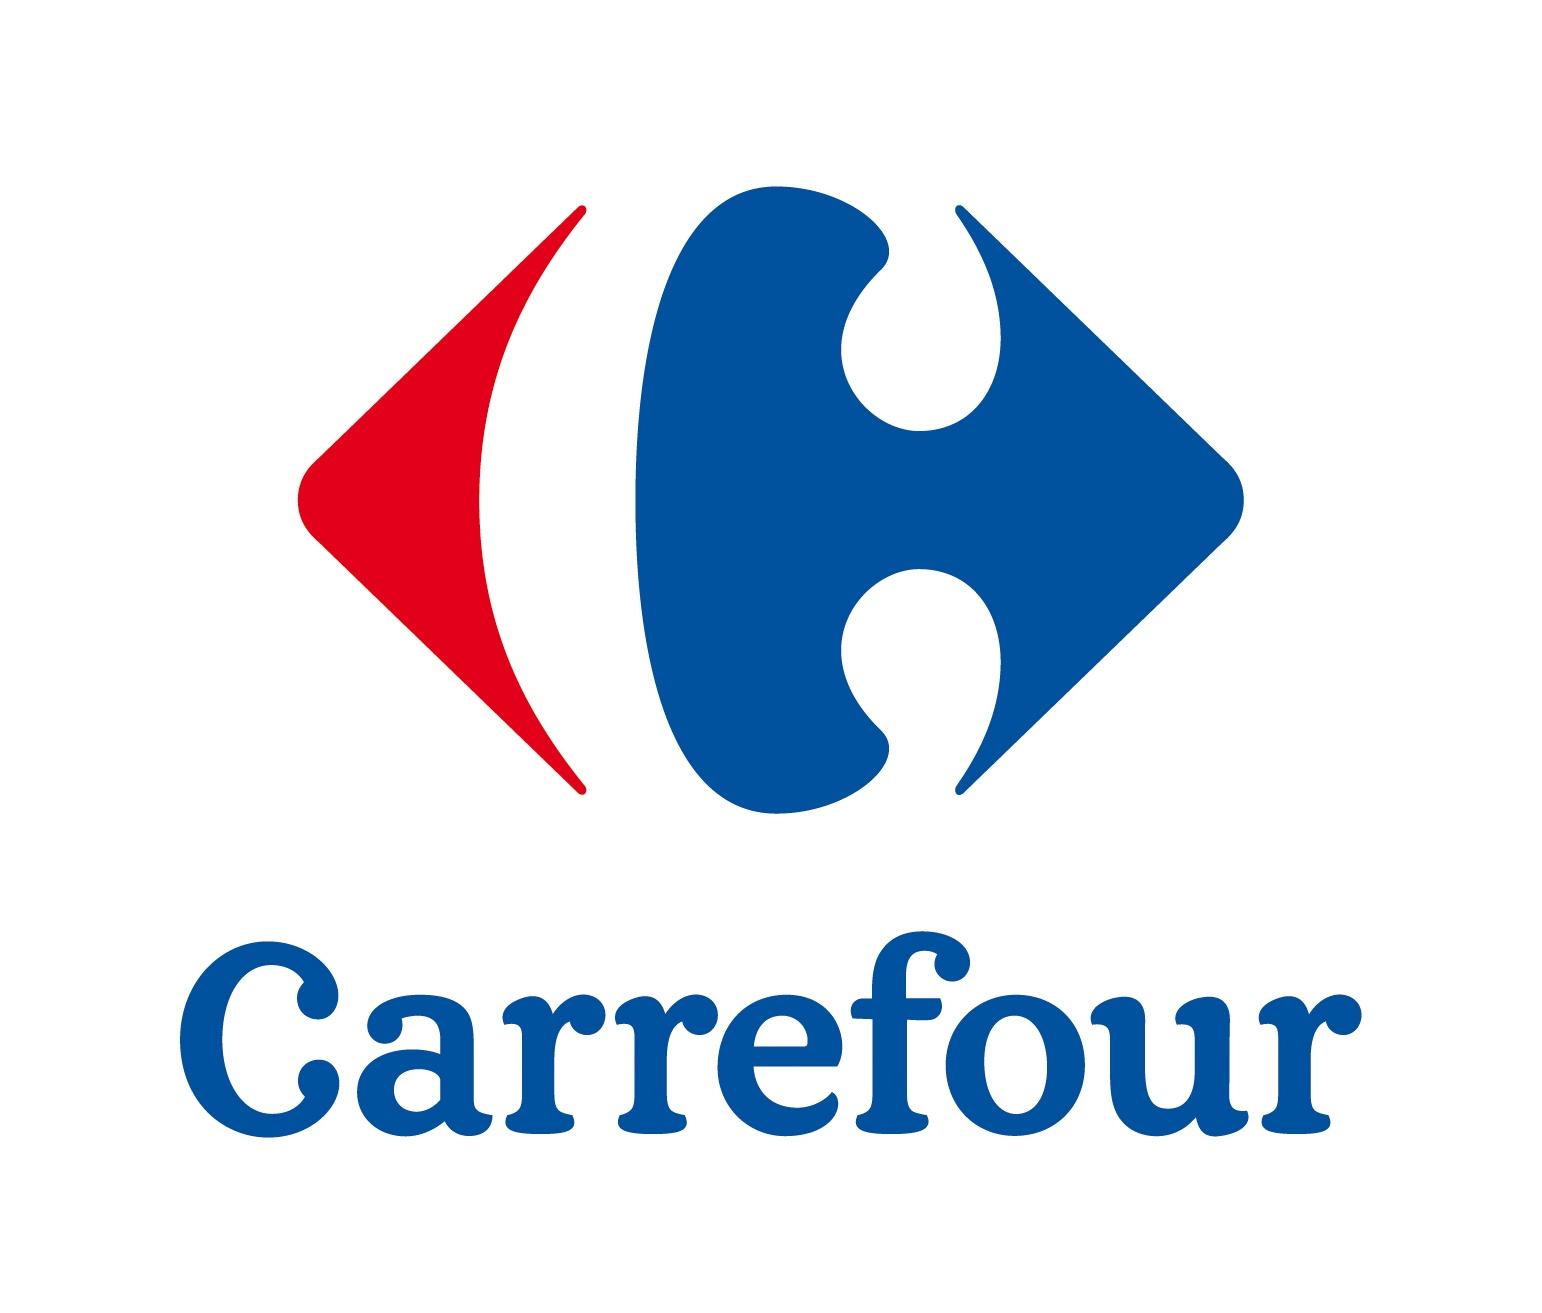 Carrefour Digne Les Bains